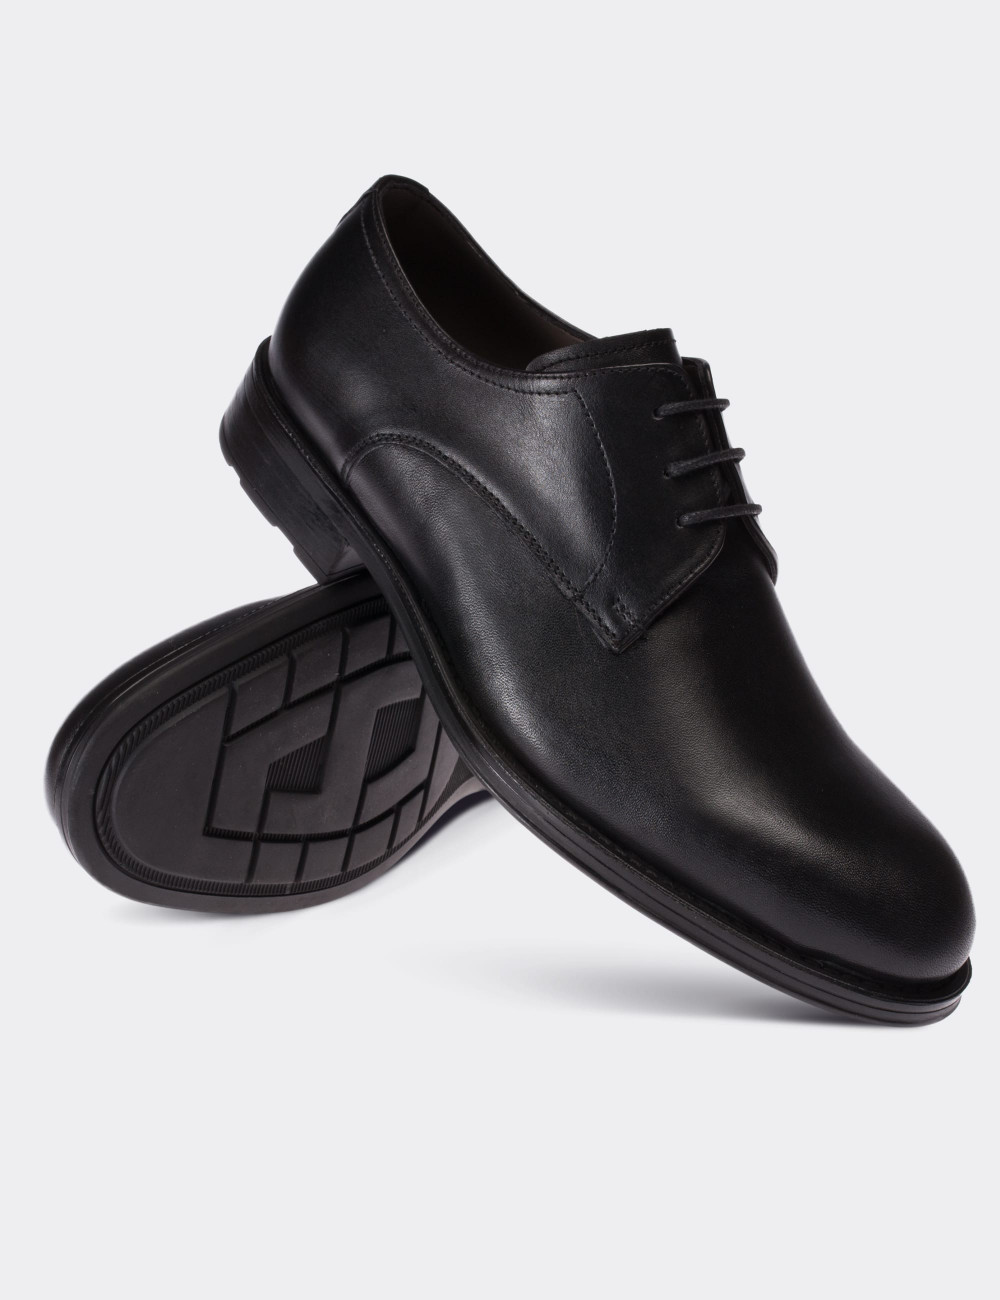 Hakiki Deri Siyah Klasik Erkek Ayakkabı - 00479MSYHC03